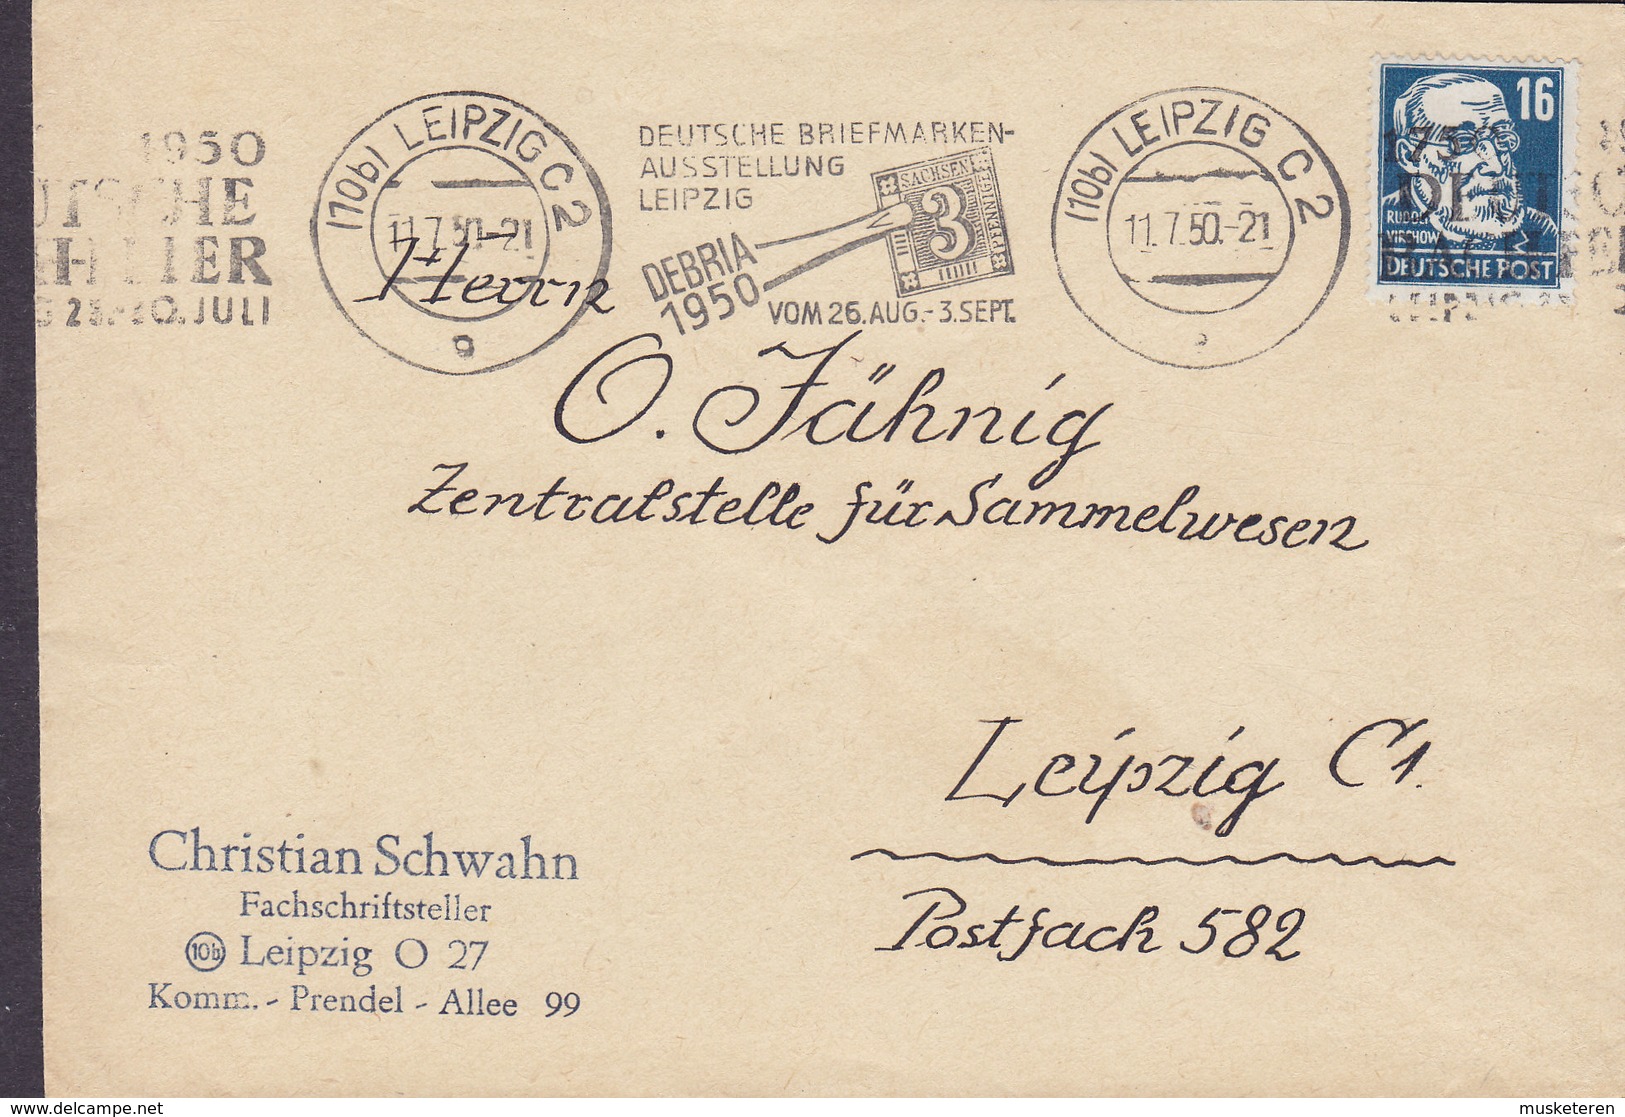 Germany CHRISTIAN SCHWAHN Fachschriftsteller 'DEBRIA Briefmarken-Ausstellung' LEIPZIG 1950 Cover Brief Rudolf Virchow - Lettres & Documents